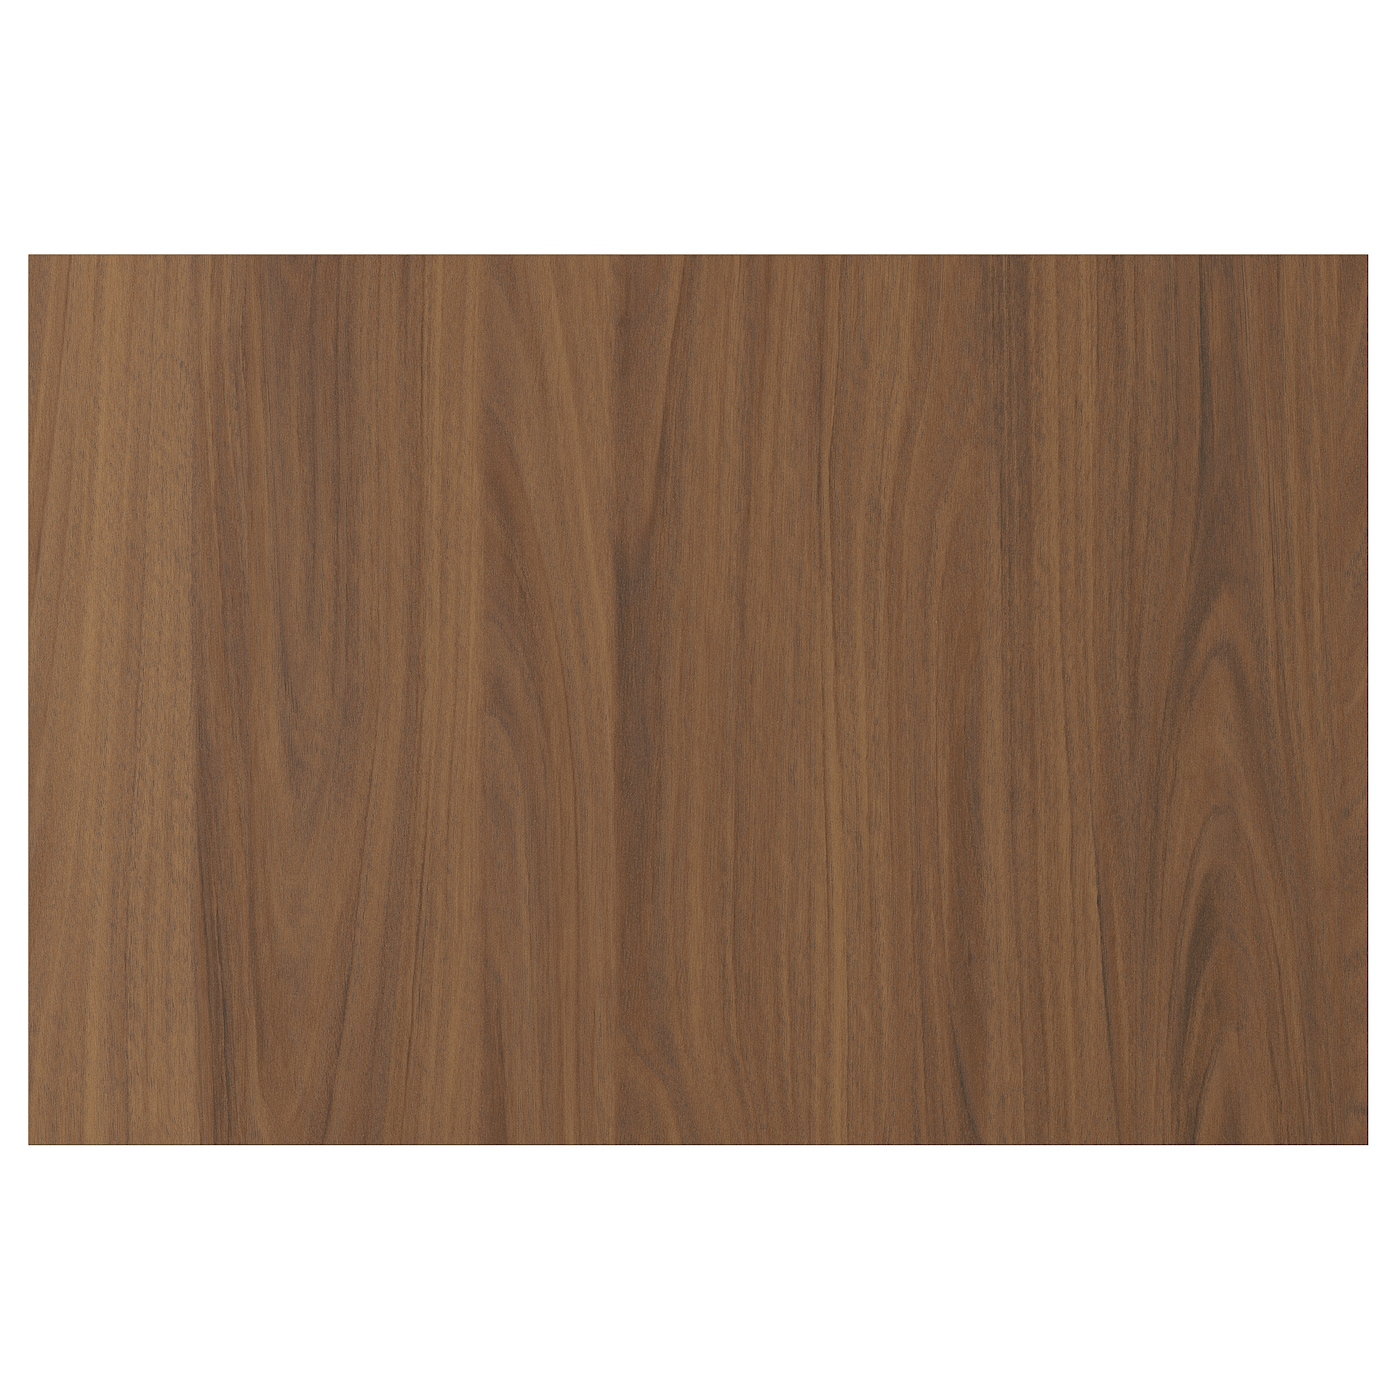 Дверца  - TISTORP IKEA/ ТИСТОРП ИКЕА,  60х40 см, коричневый орех